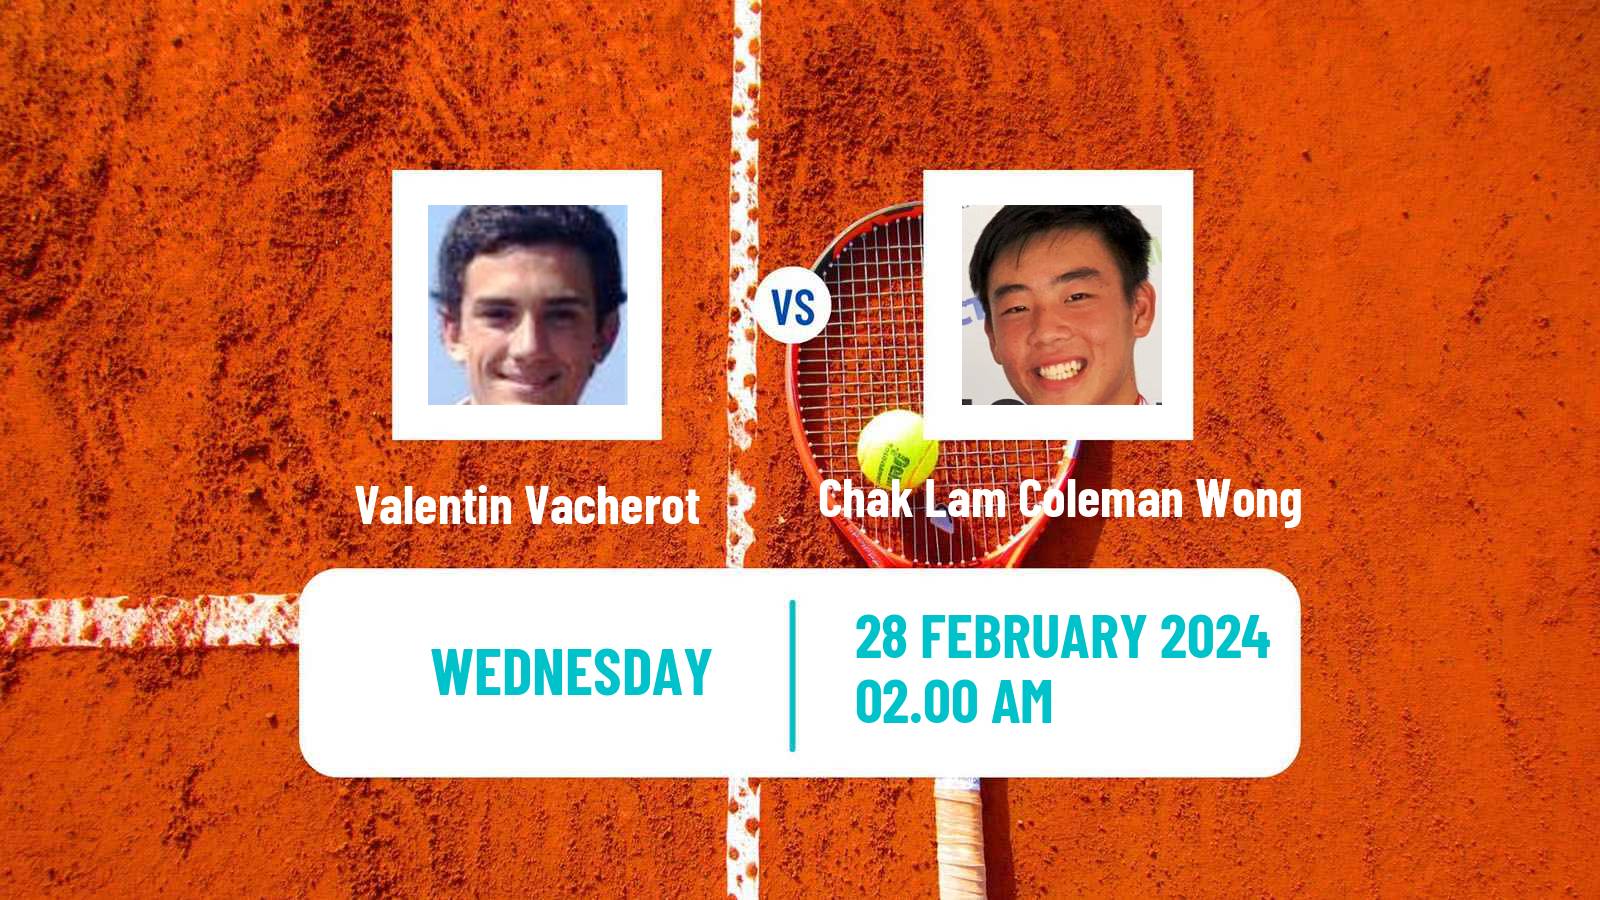 Tennis New Delhi Challenger Men Valentin Vacherot - Chak Lam Coleman Wong